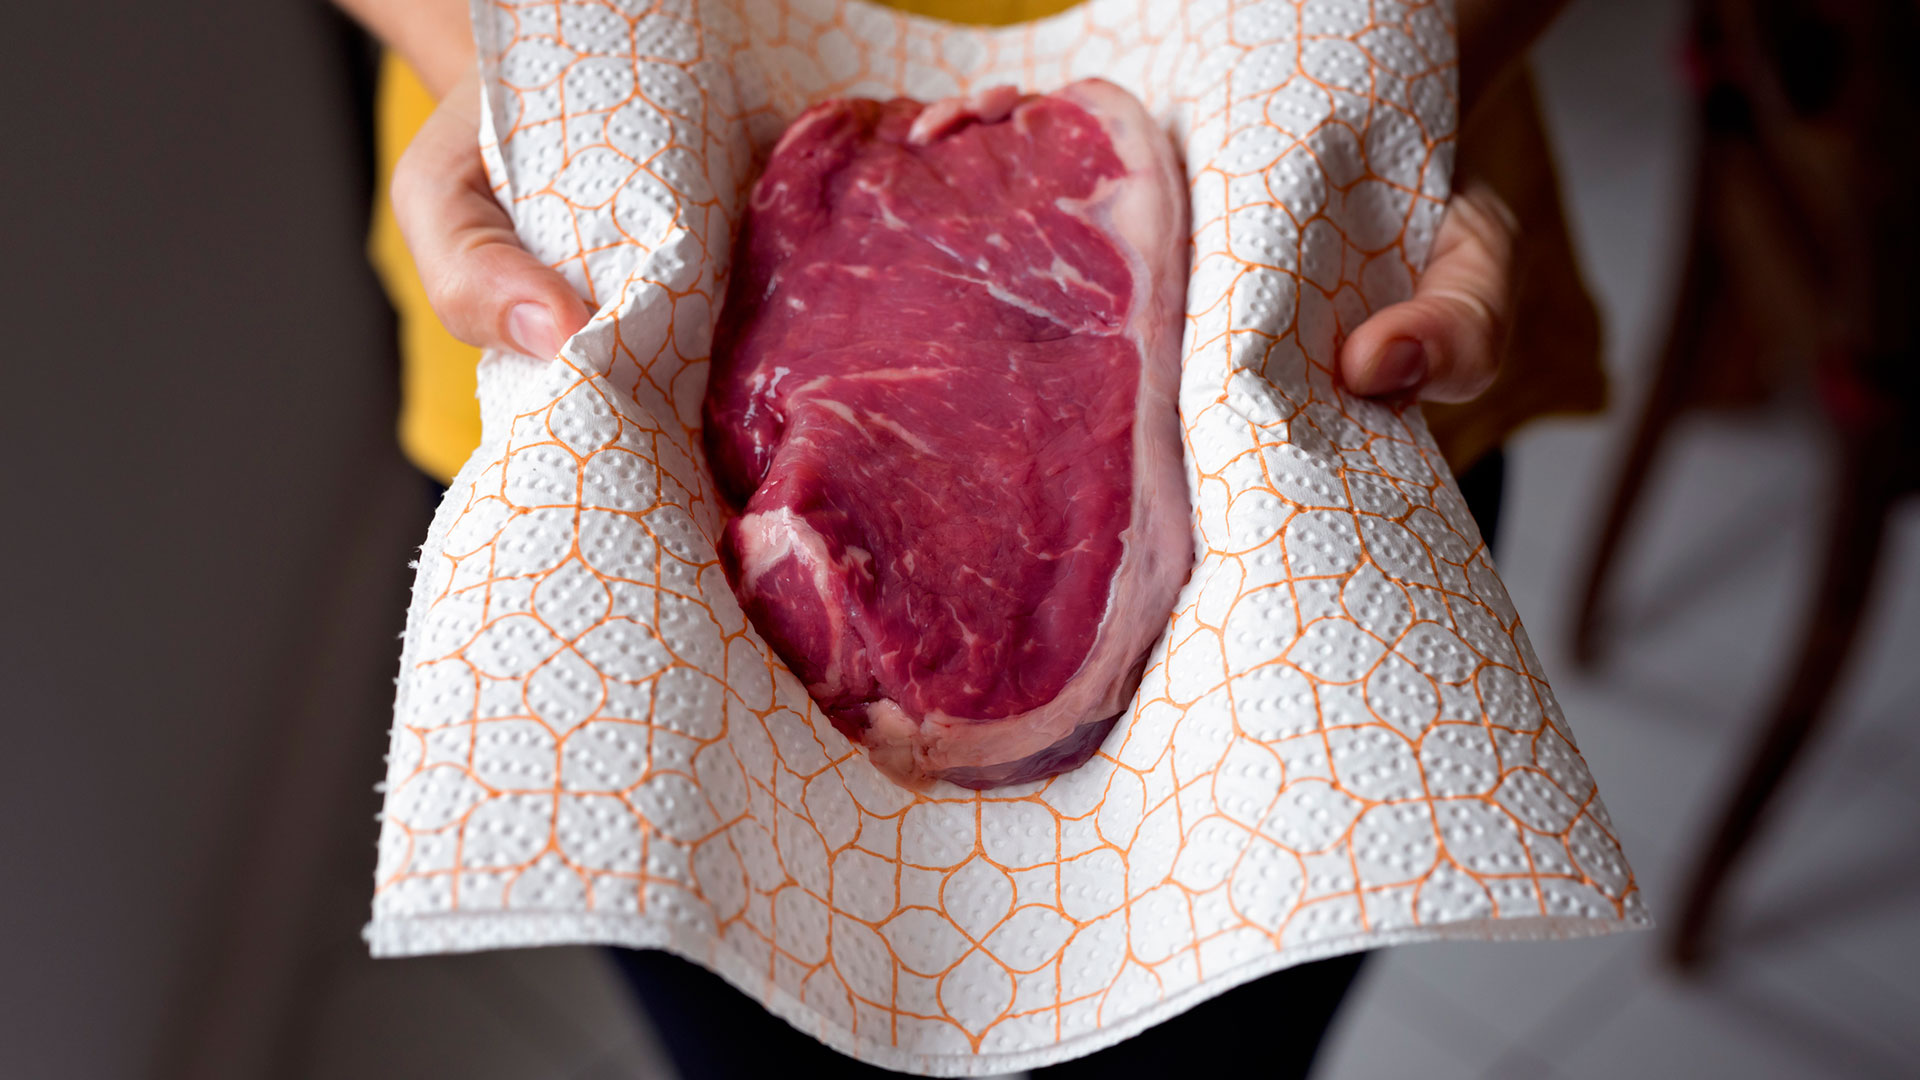 El consumo de carne cruda está vinculado a 1 de cada 14 infecciones urinarias